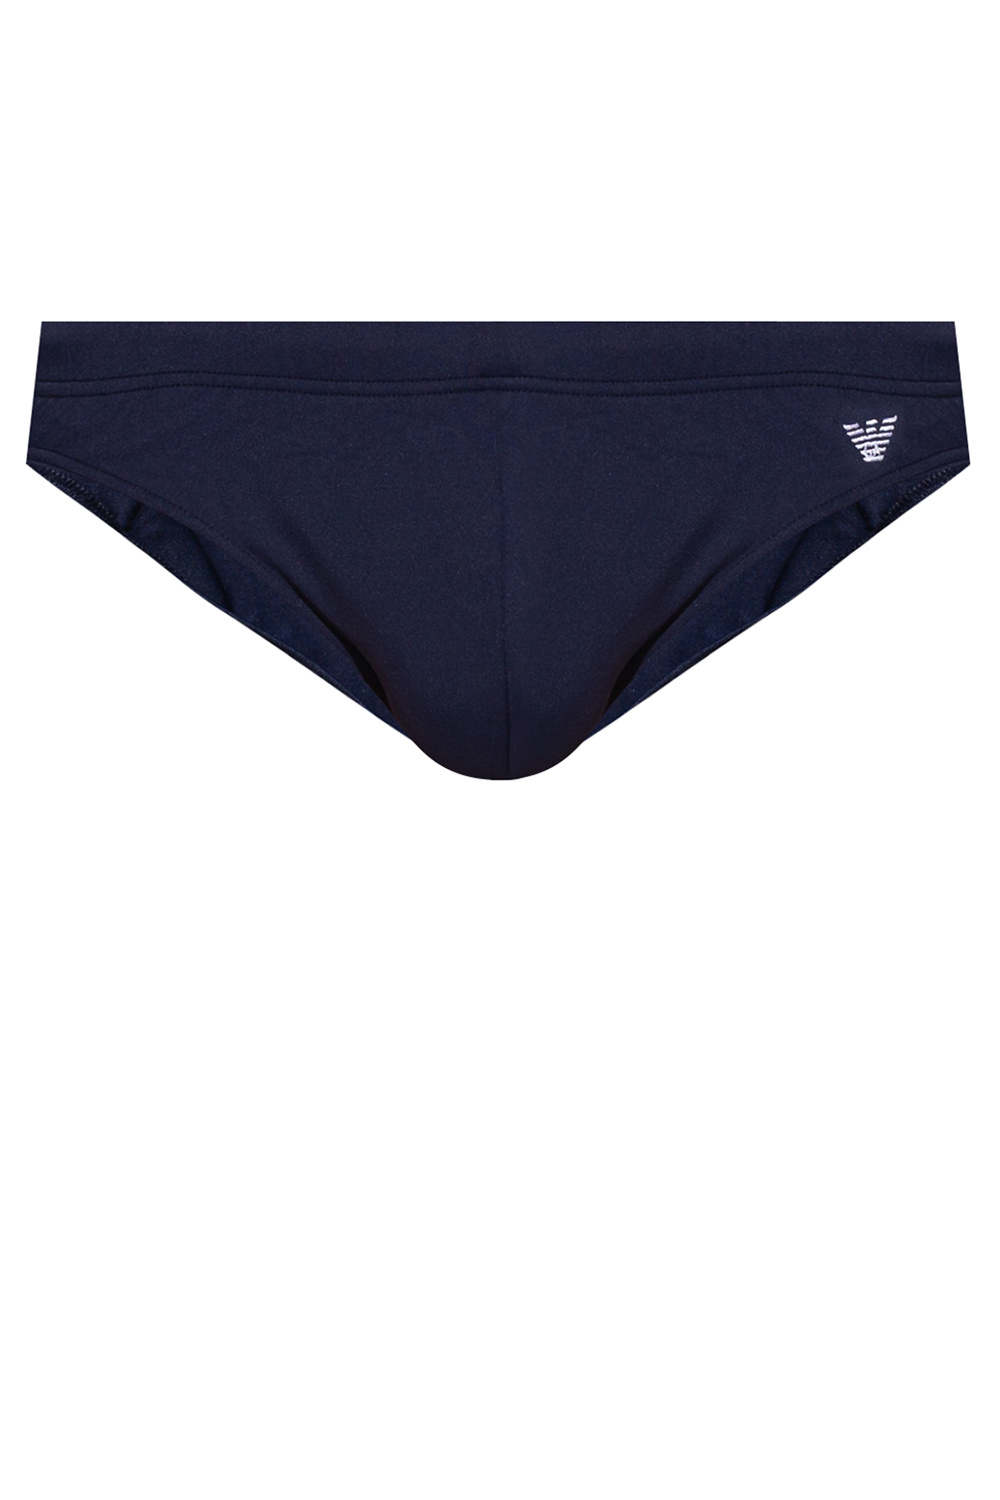 Emporio armani shorts Swim briefs